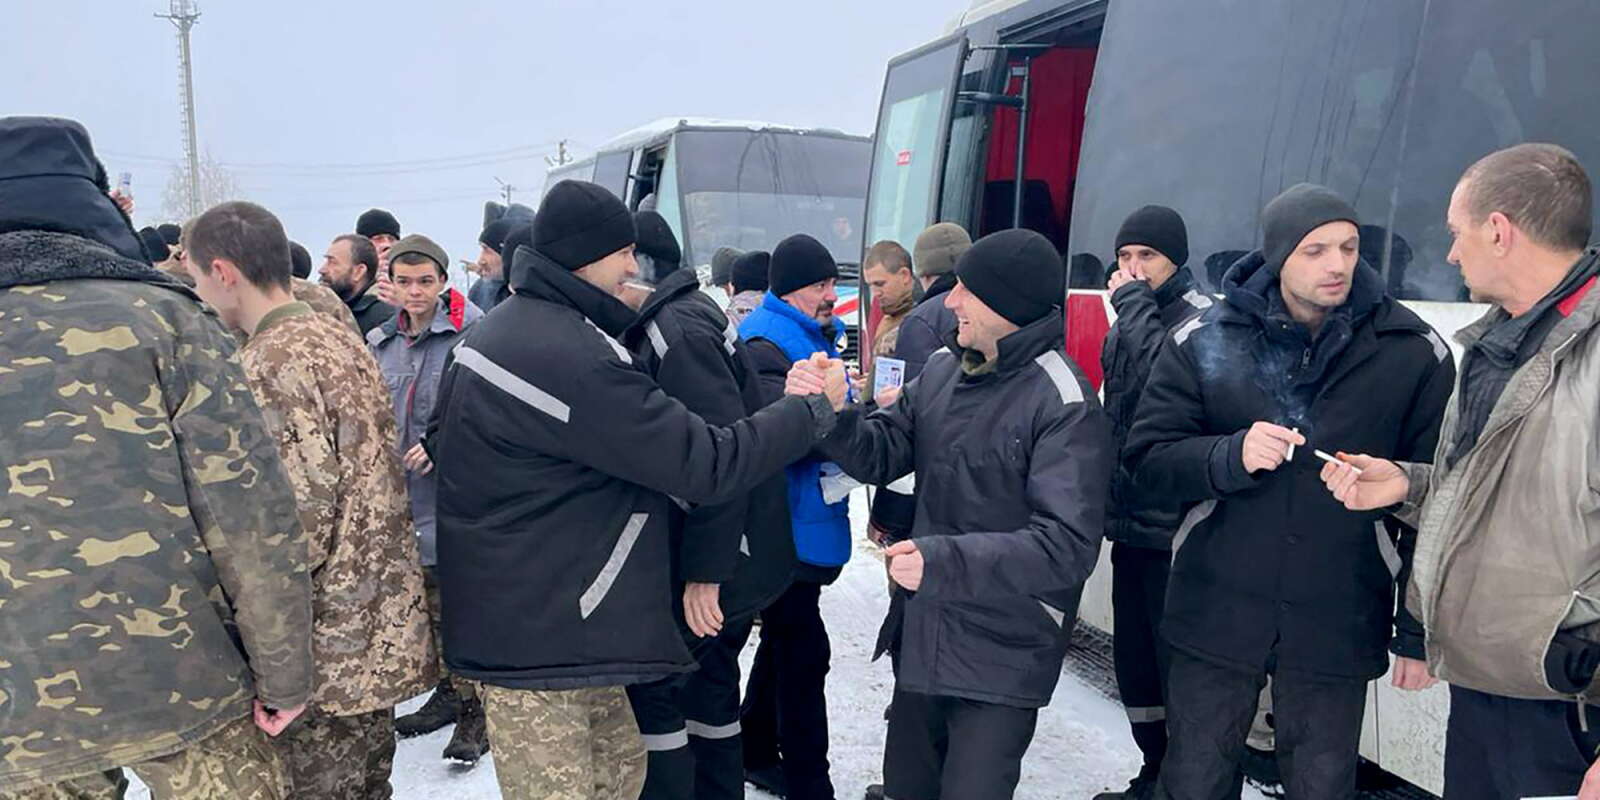 Des soldats ukrainiens libérés dans le cadre d’un échange de prisonniers avec la Russie, dans un lieu inconnu, en Ukraine, le 4 février 2023.